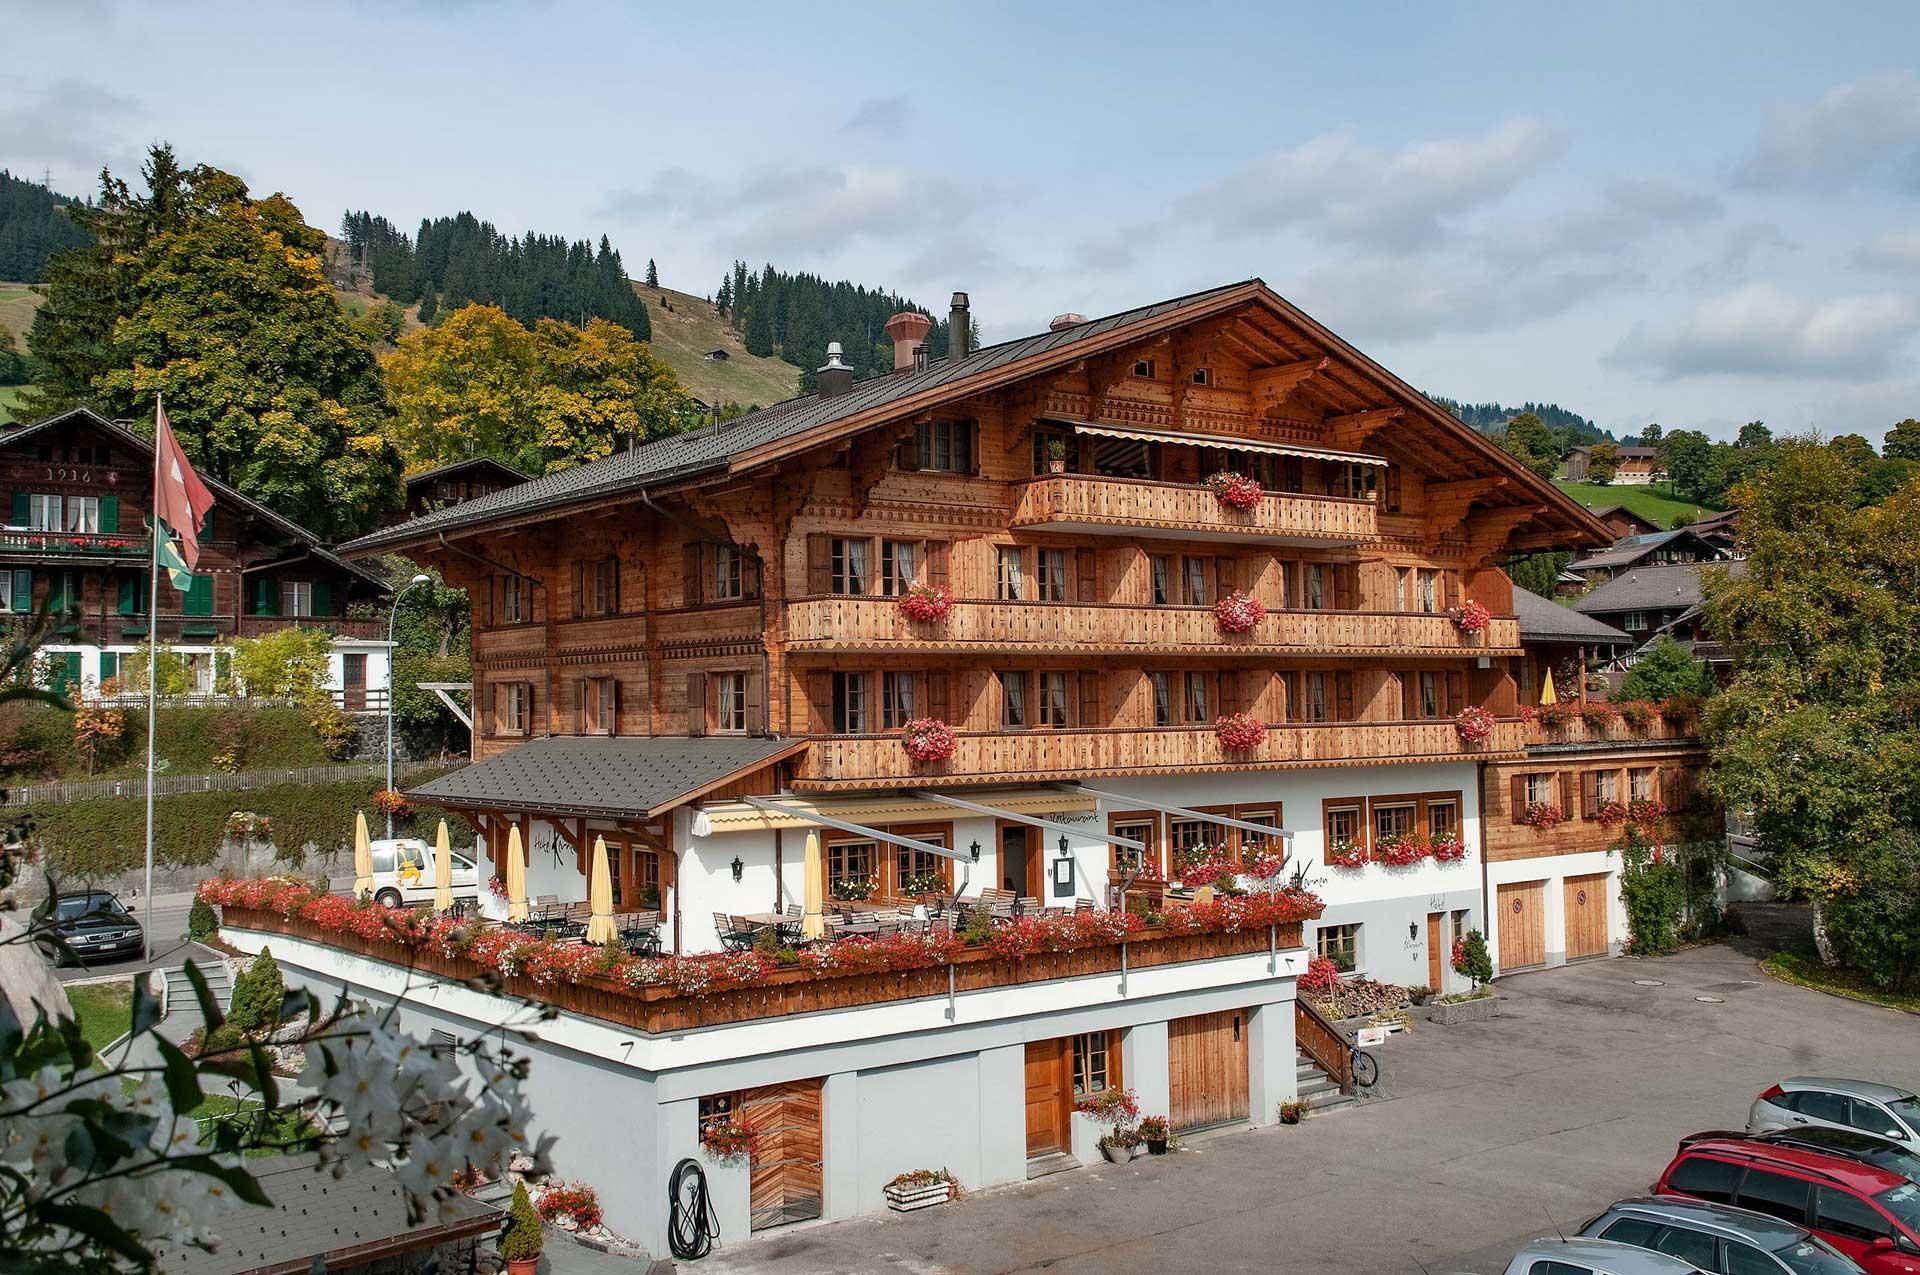 Hotel Kernen
- Schönried / Gstaad -